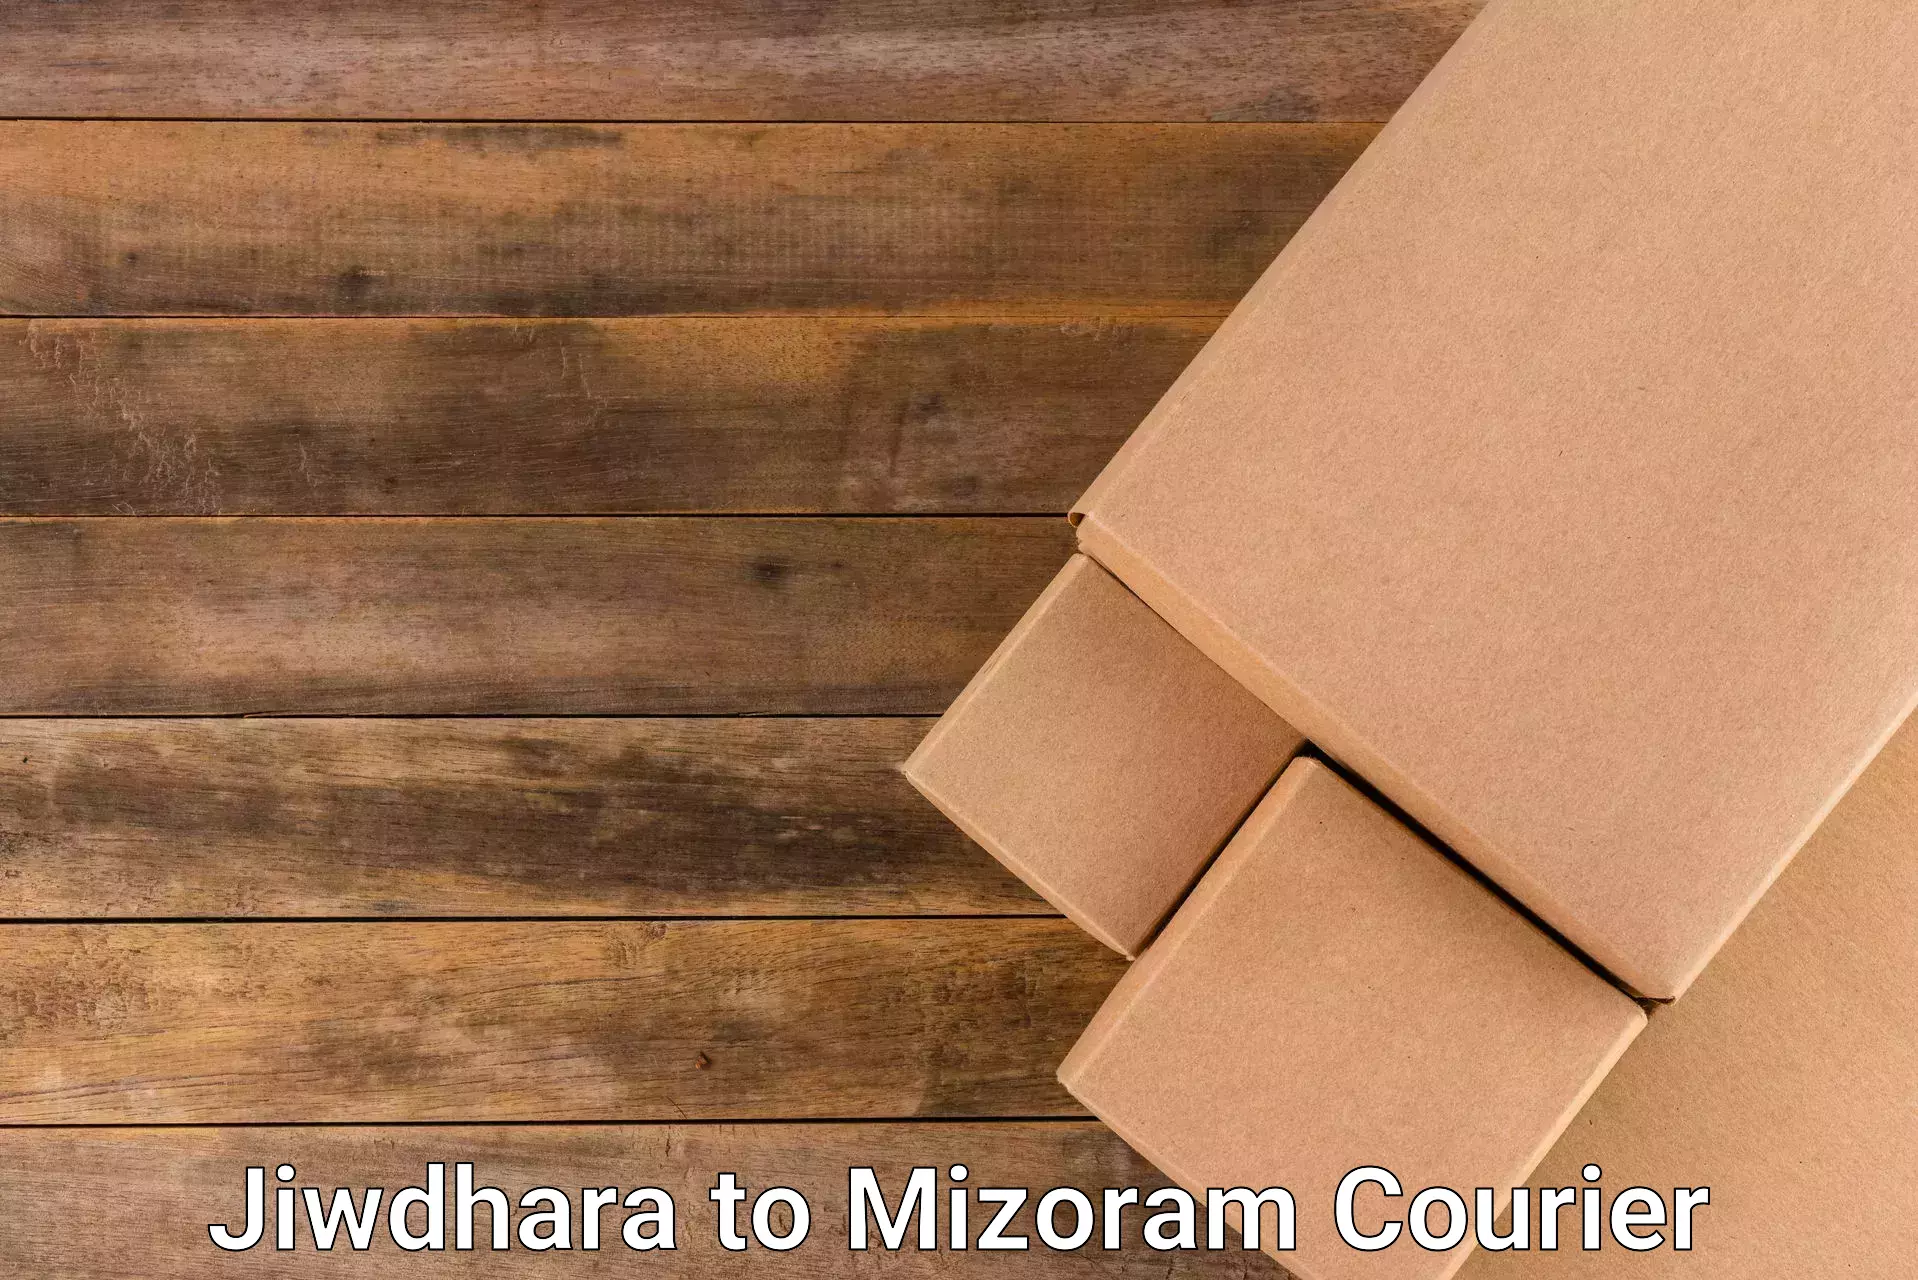 Professional courier handling in Jiwdhara to Serchhip